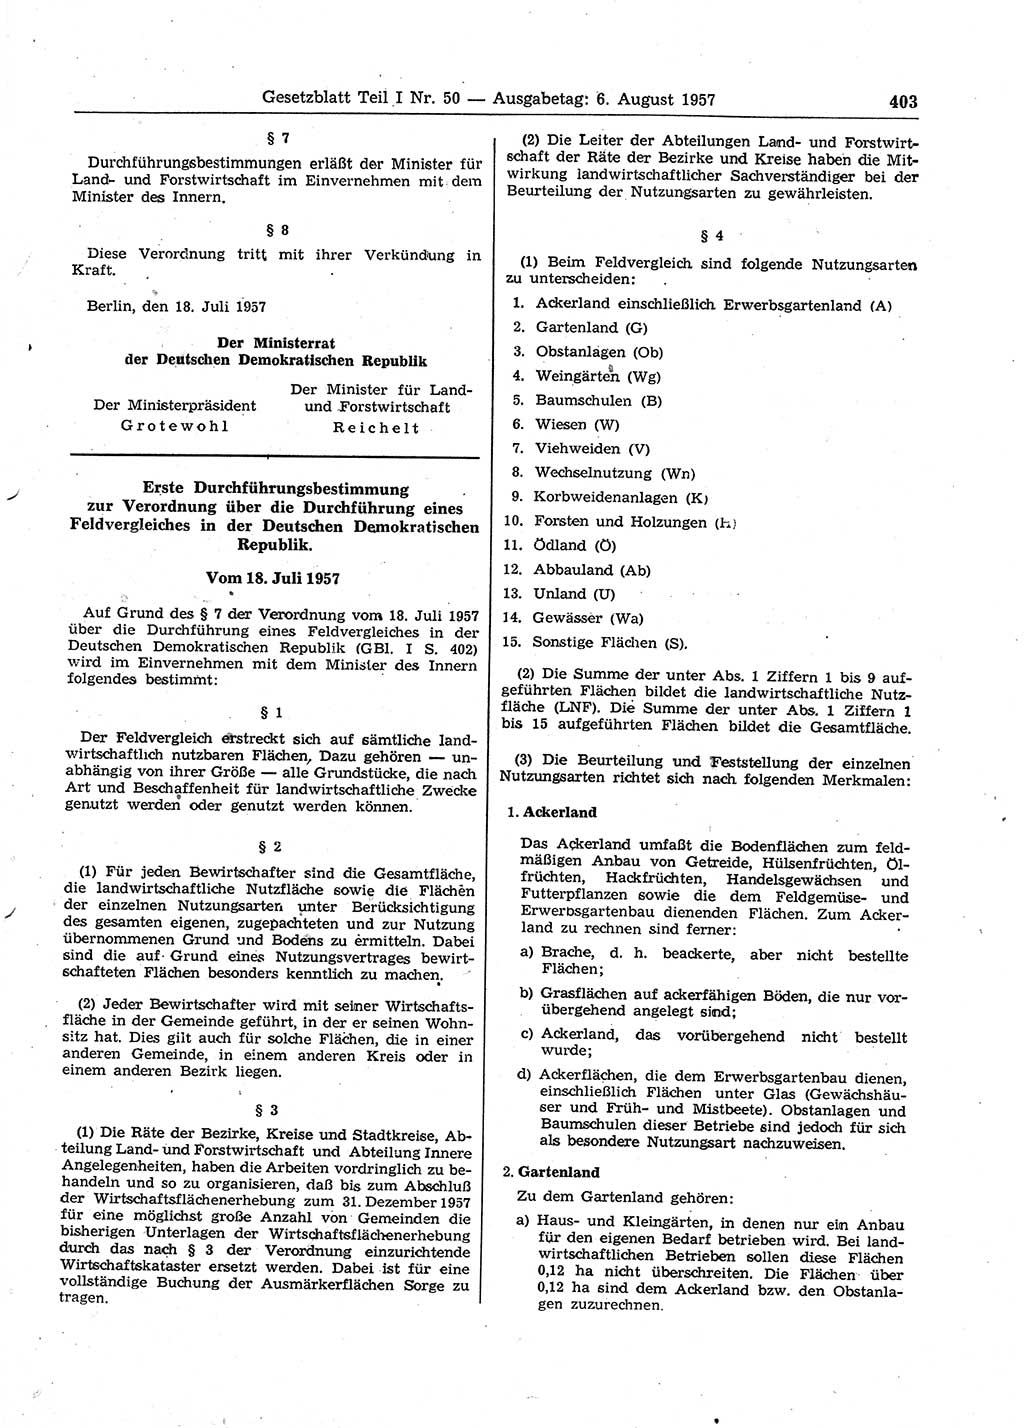 Gesetzblatt (GBl.) der Deutschen Demokratischen Republik (DDR) Teil Ⅰ 1957, Seite 403 (GBl. DDR Ⅰ 1957, S. 403)